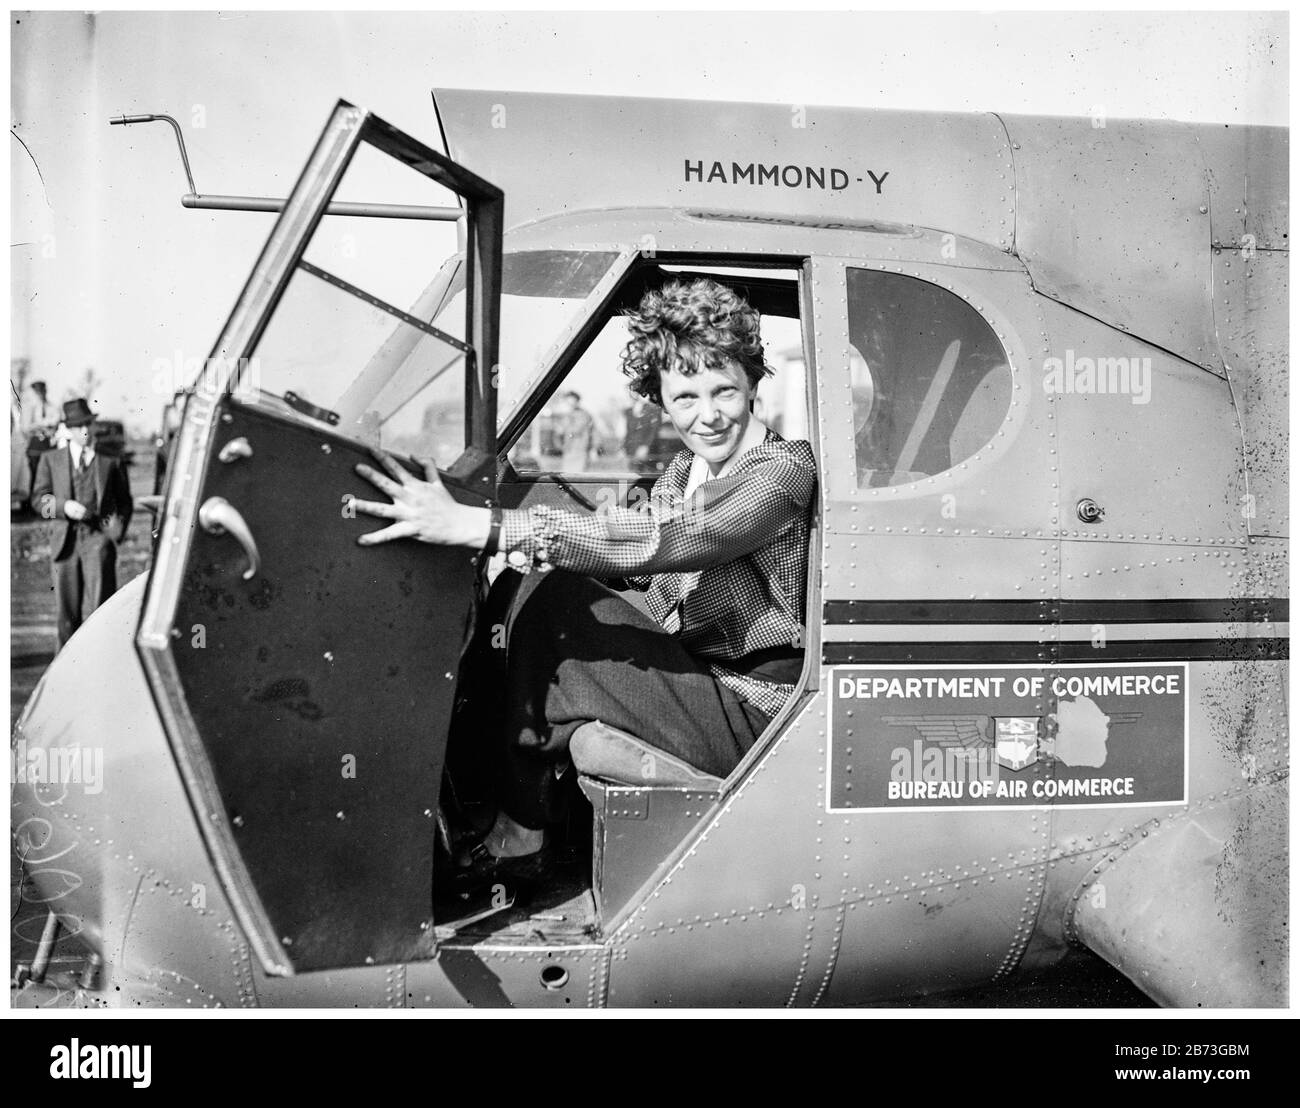 Amelia Earhart (1897-vers le 2 juillet 1937), pionnière de l'aviation américaine, dans un avion, portrait du 20° siècle photo de Harris & Ewing, 1936 Banque D'Images